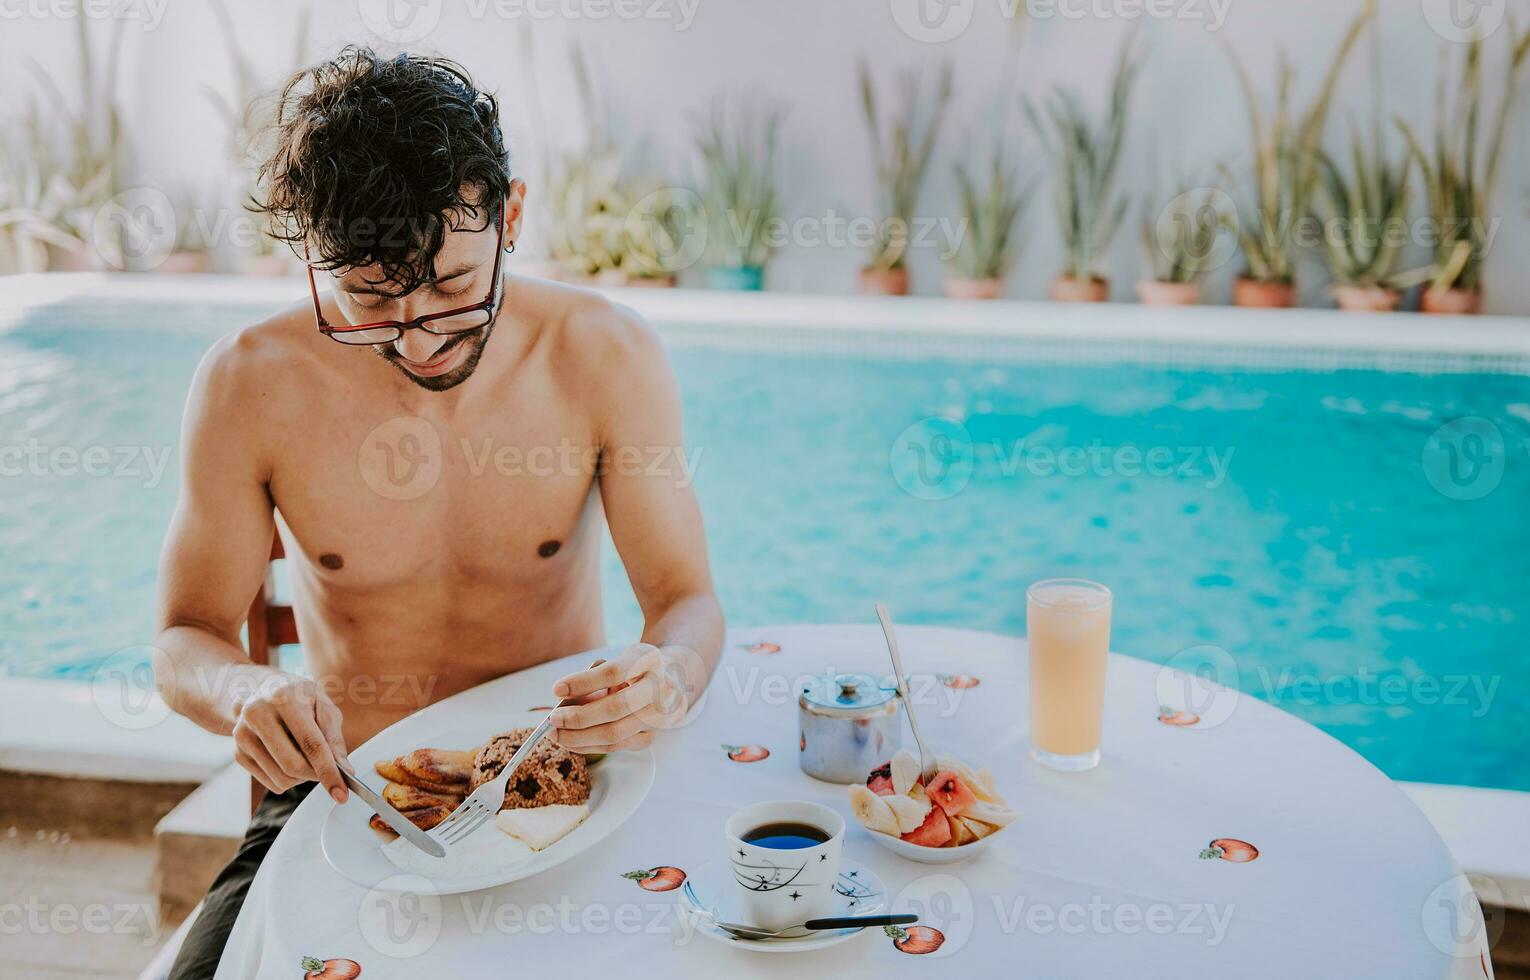 jong Mens Aan vakantie in hotel hebben ontbijt in de buurt zwemmen zwembad. ontbijt in de buurt de zwemmen zwembad. persoon hebben ontbijt in de hotel met zwembad in de achtergrond foto